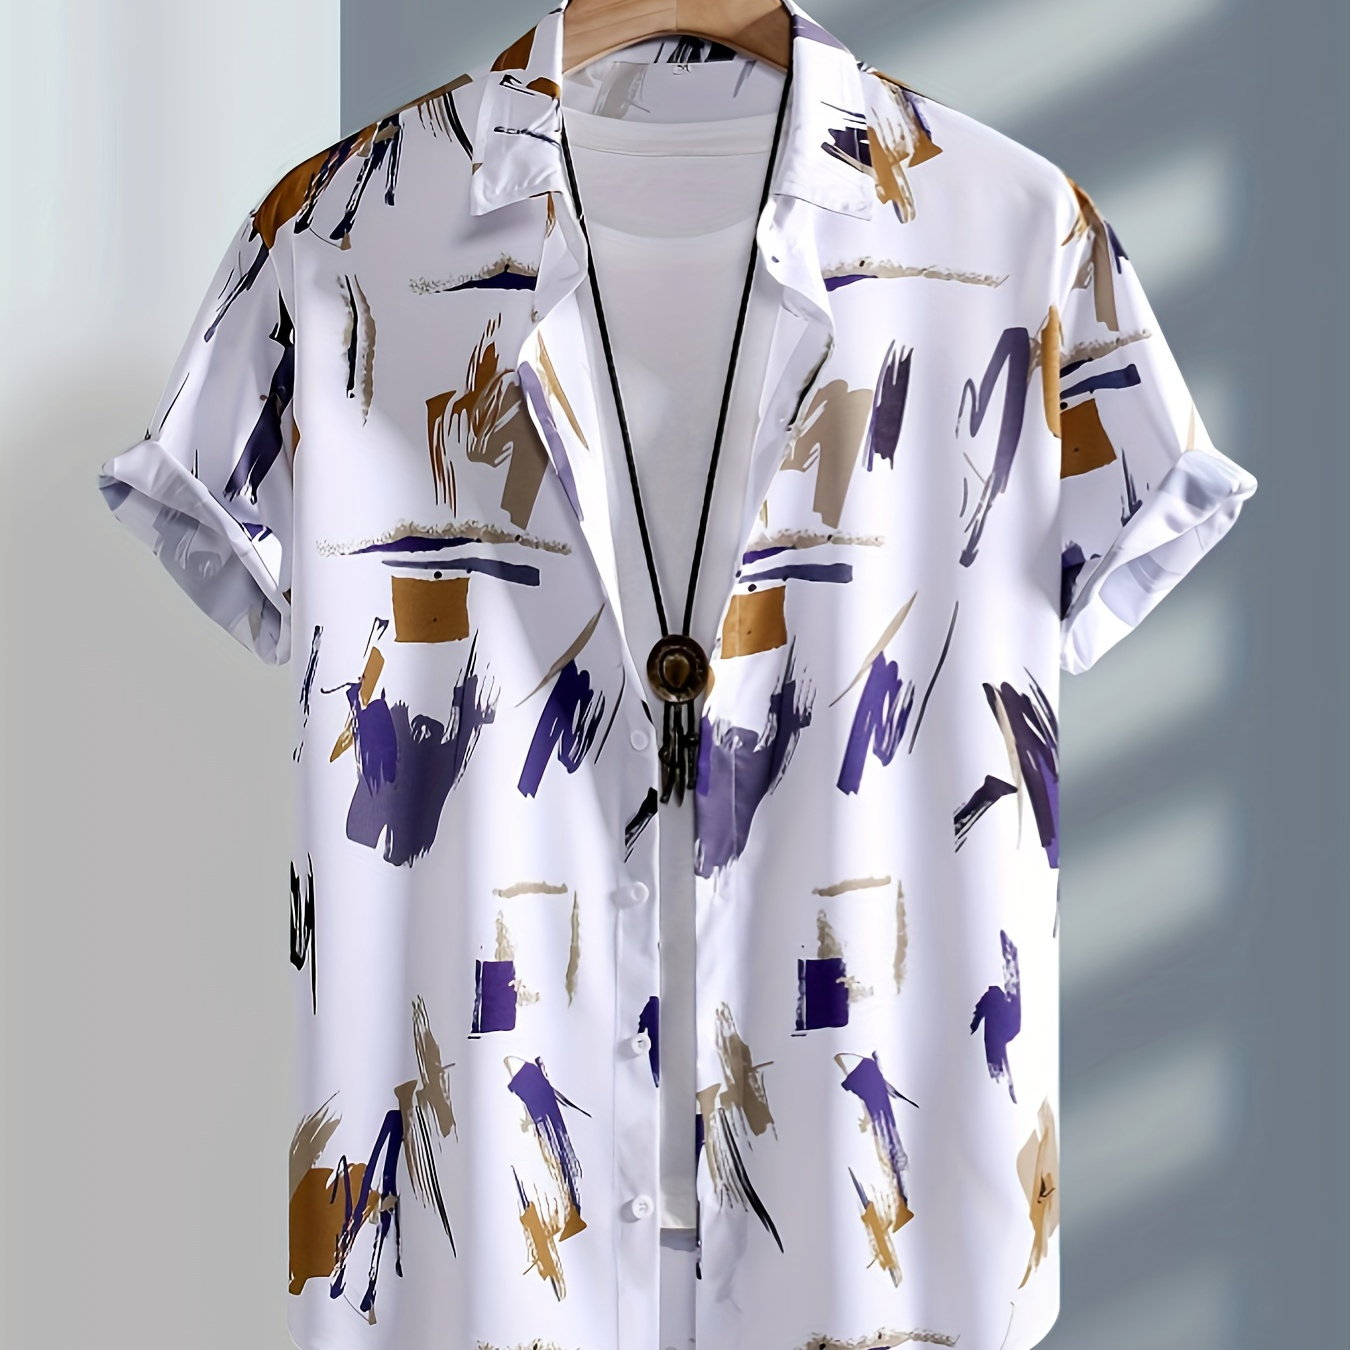 

Men's Graffiti Graphic Print Shirt, Casual Lapel Button Up Short Sleeve Shirt For Summer Outdoor Activities